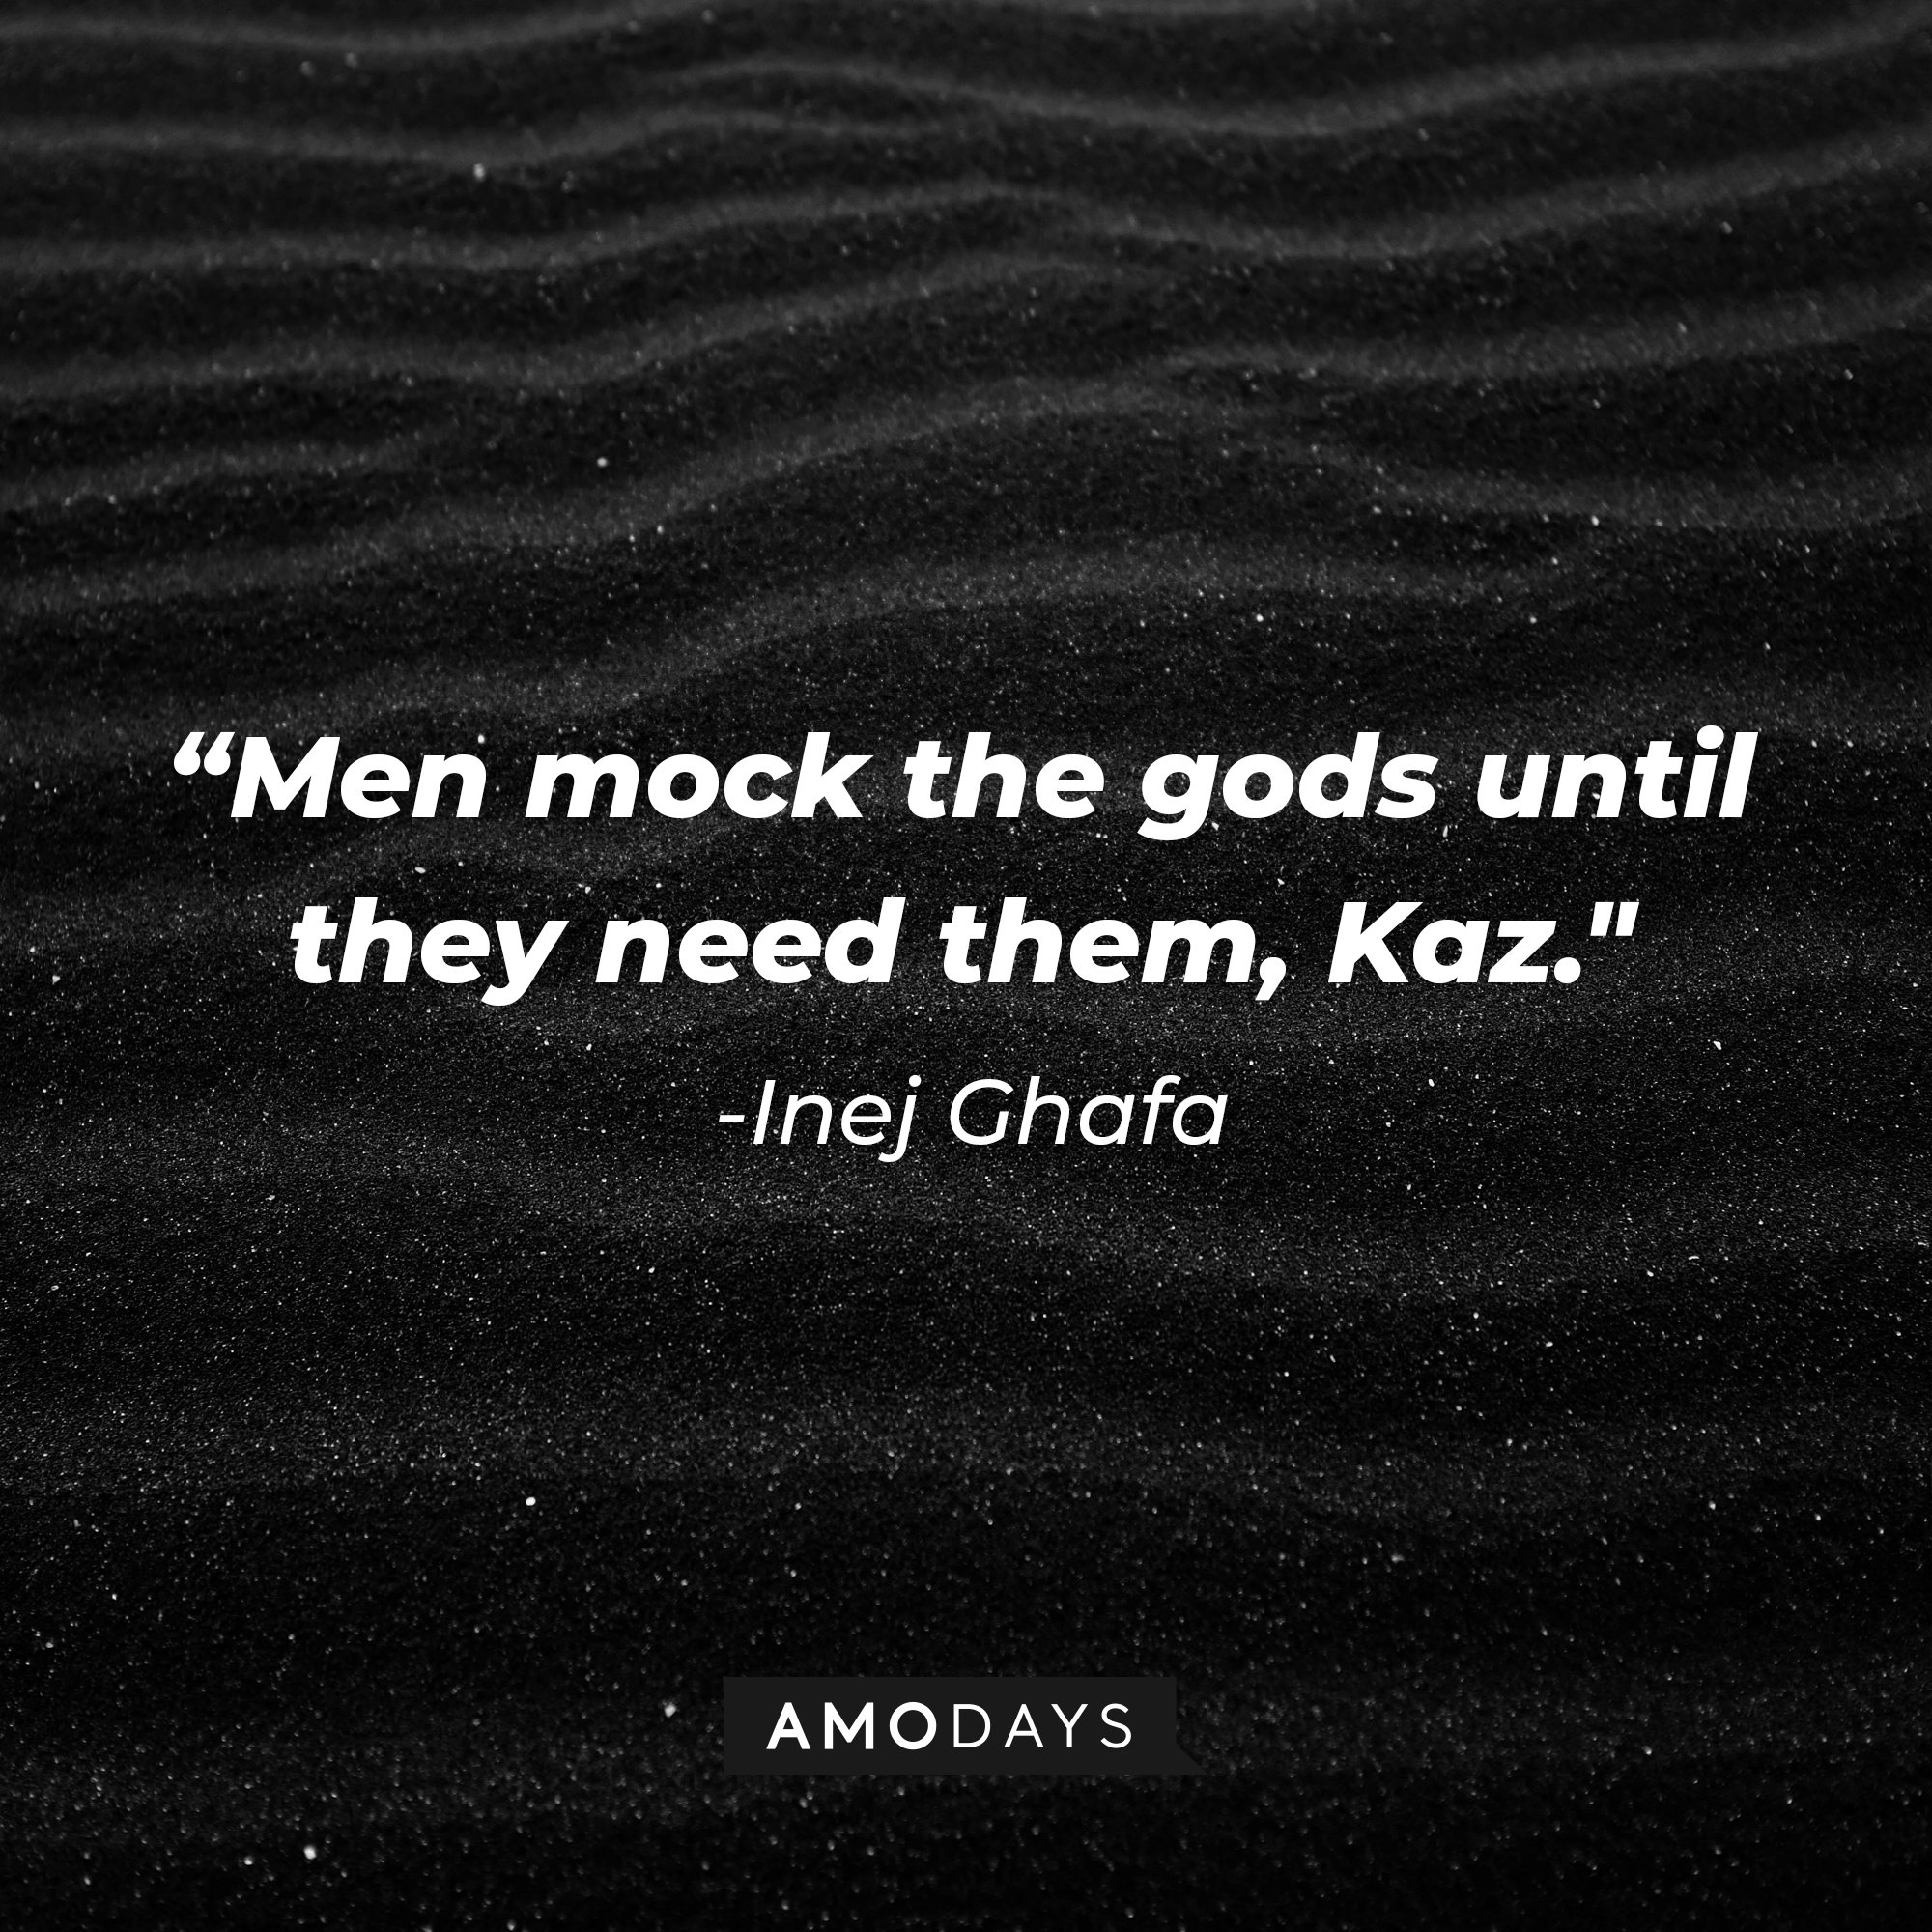 Inej Ghafa’s quote: "Men mock the gods until they need them, Kaz." | Image: AmoDays